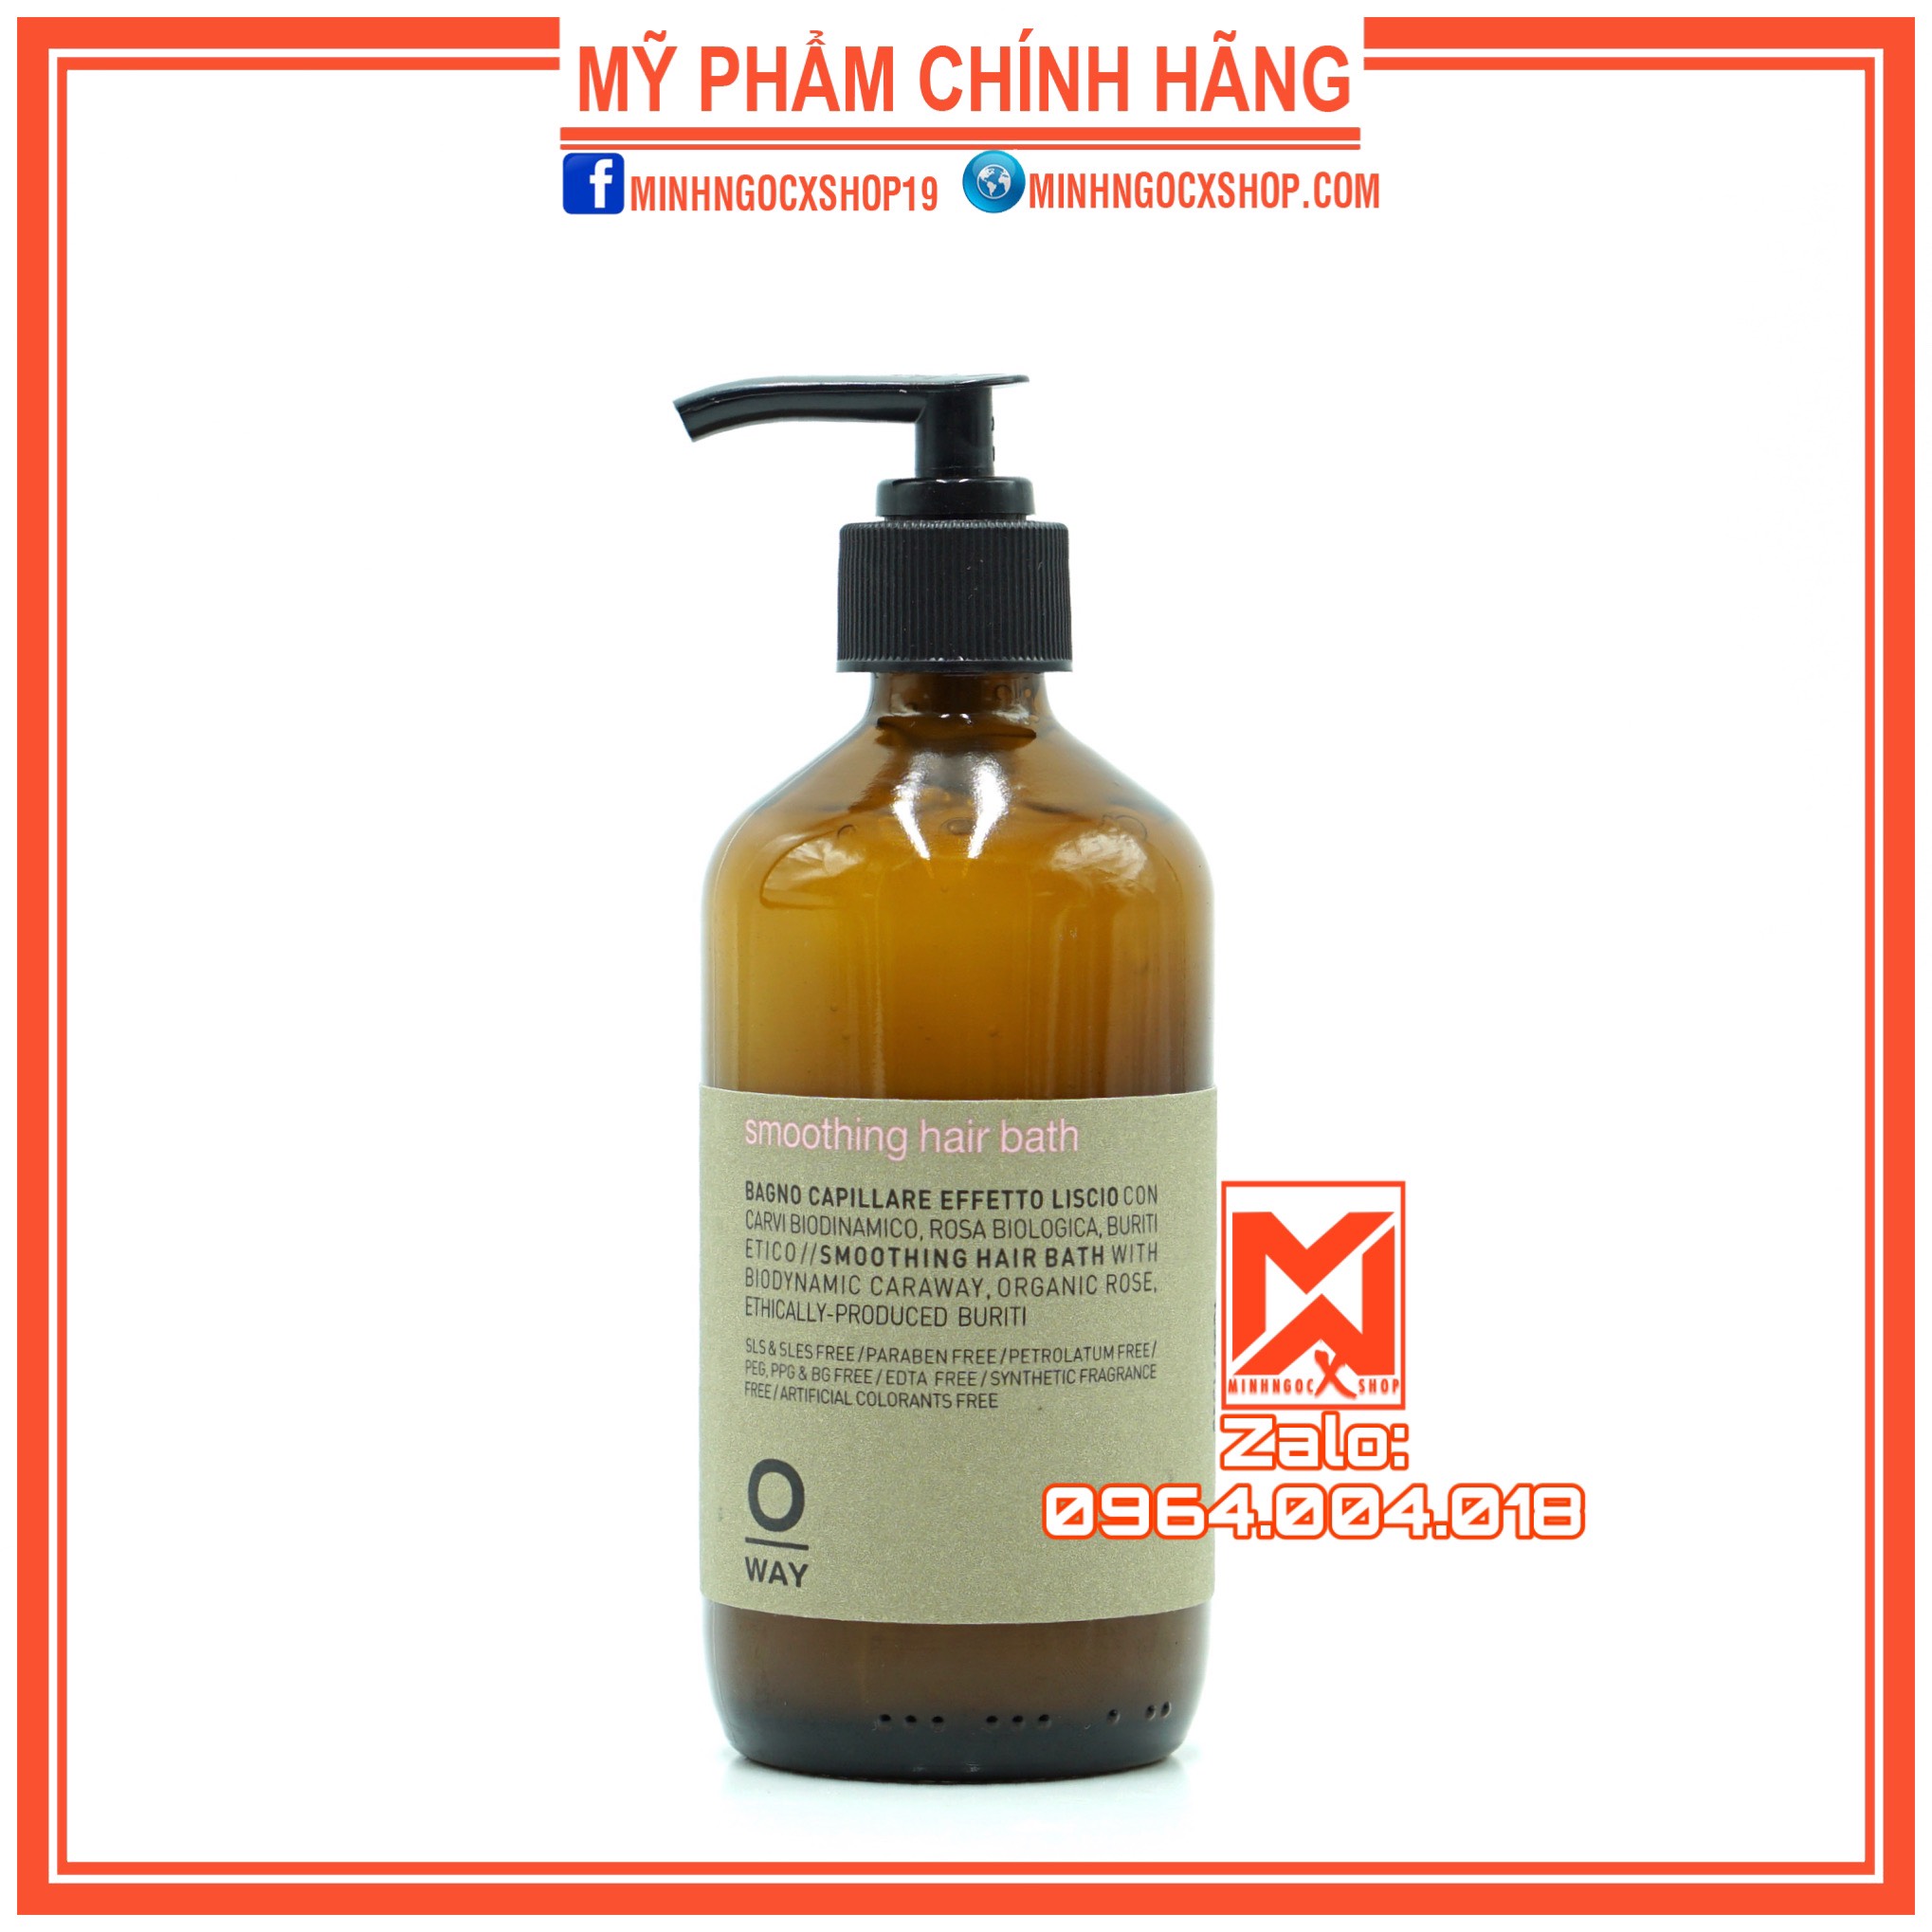 DẦU GỘI SIÊU MƯỢT OWAY SMOOTHING HAIR BATH 240ML CHÍNH HÃNG - Minh Ngọc  Xshop